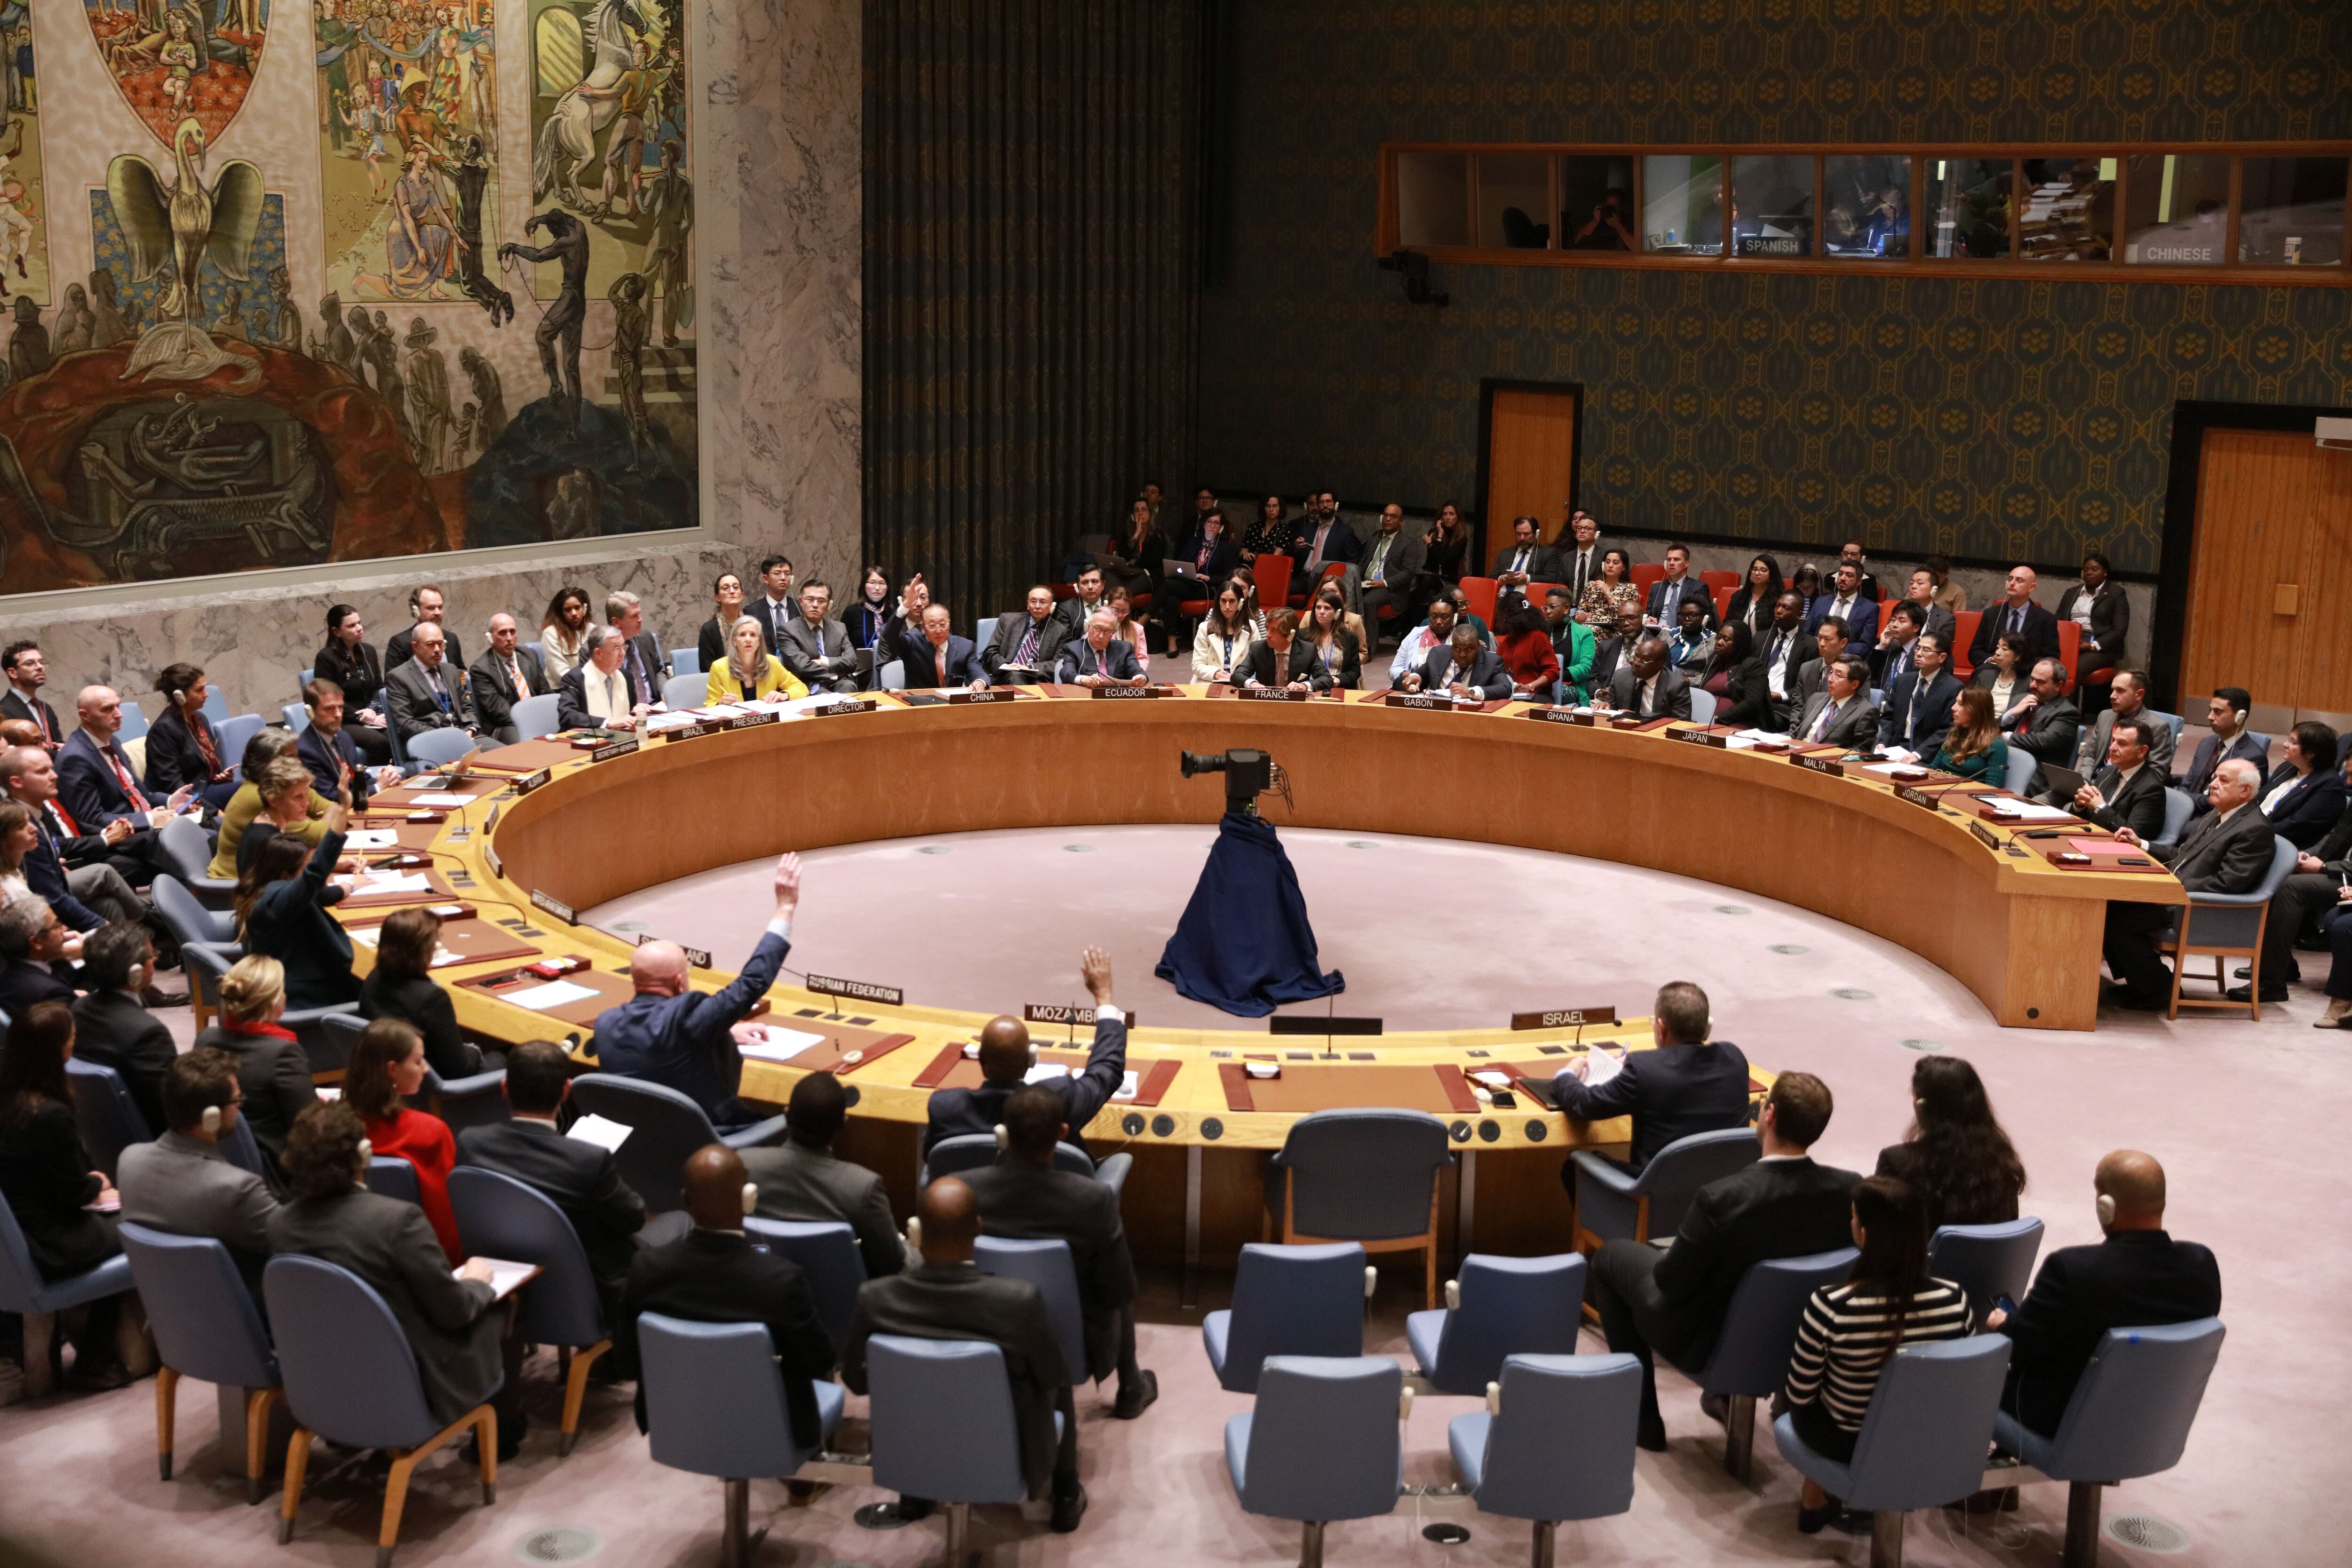 Tiene lugar ante la inacción del Consejo de Seguridad (Europa Press/Contacto/Xie E)
